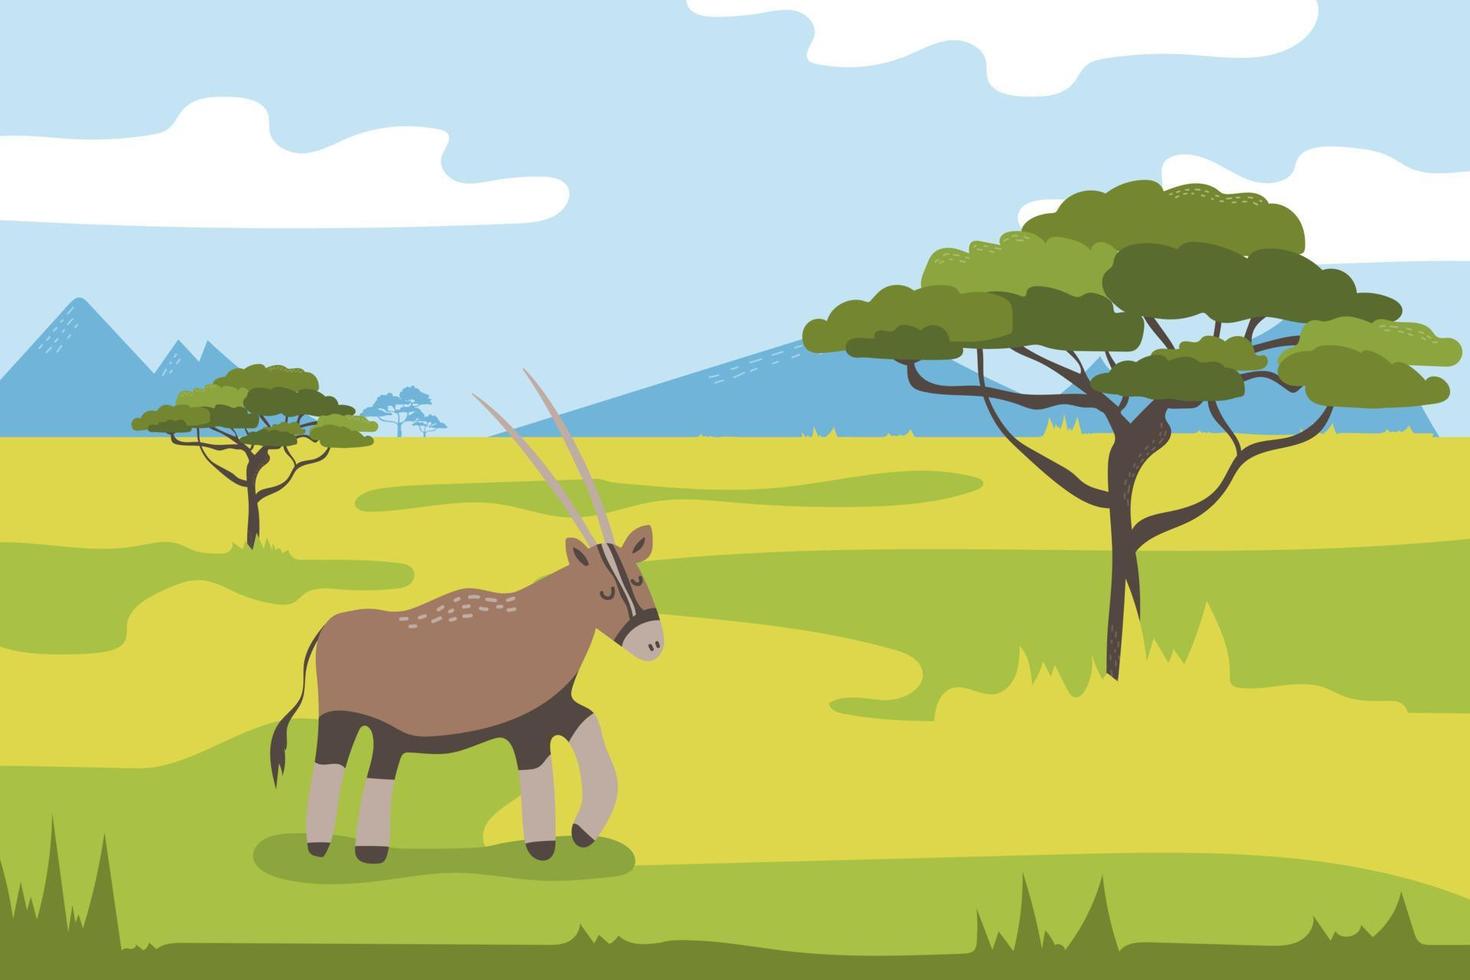 Afrikaanse groen savanne met begrazing antilope landschap - dieren in het wild tafereel vector